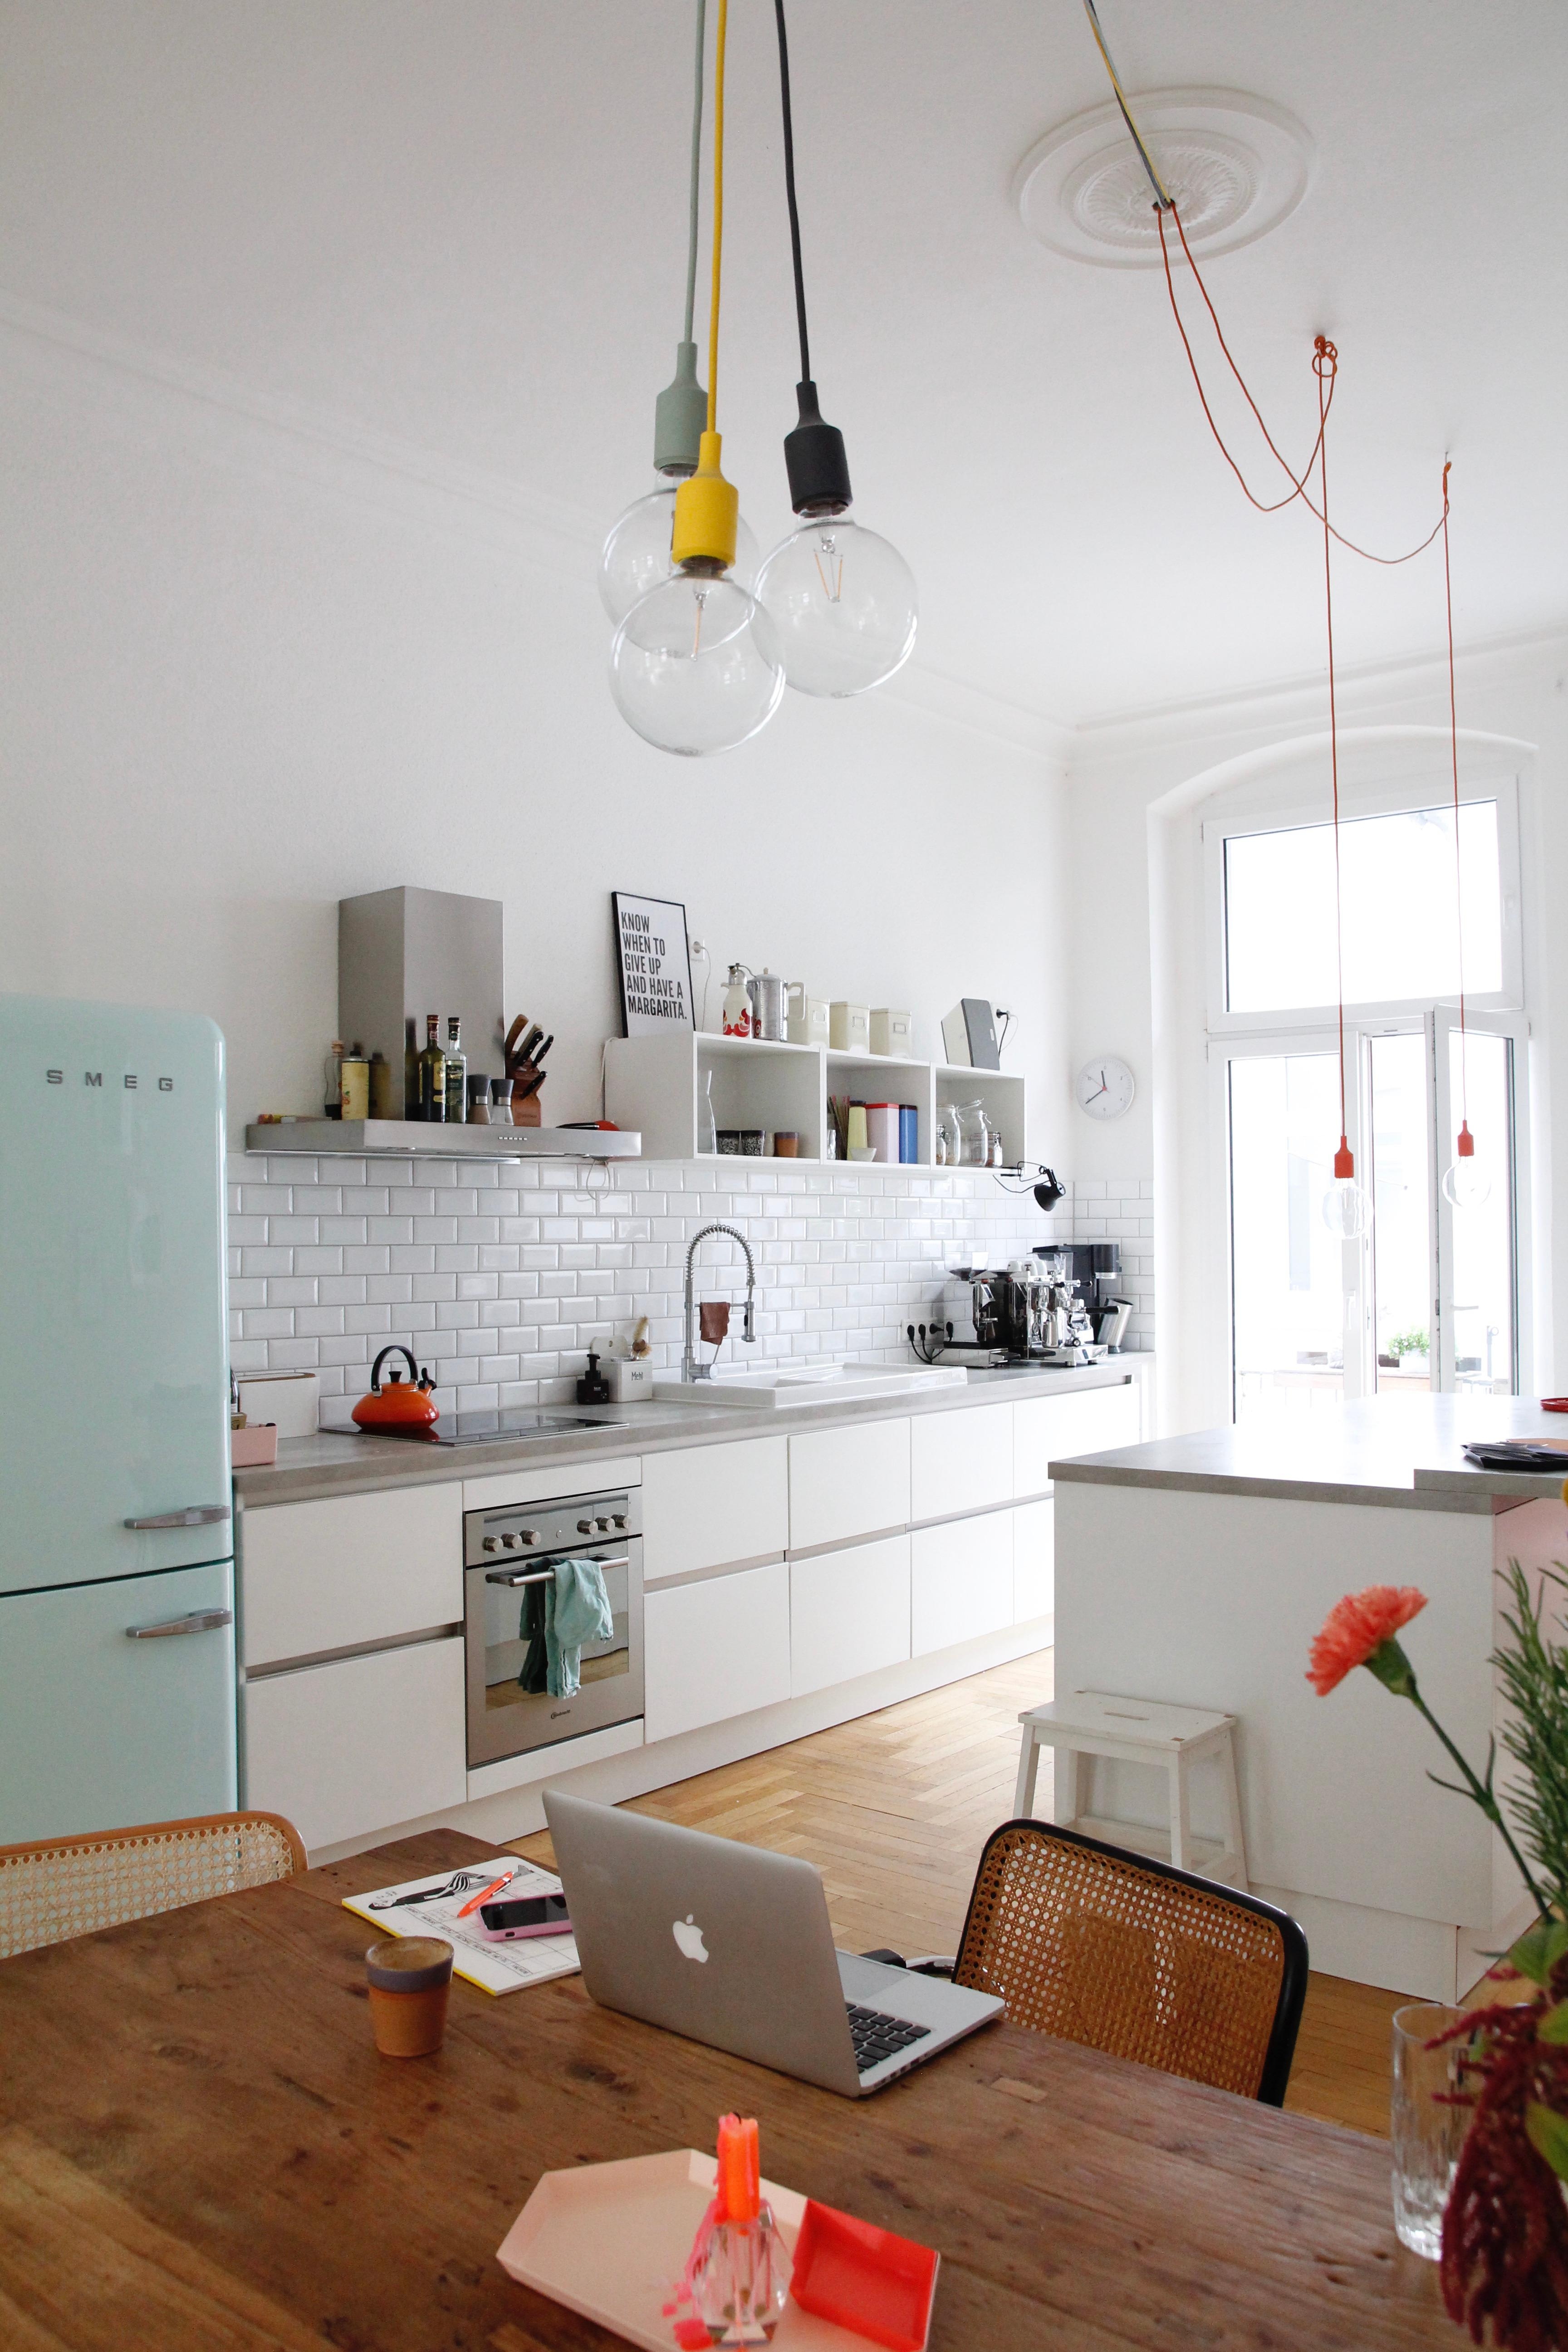 #küche #smegkühlschrank #metrofliesen #farbe #altbau